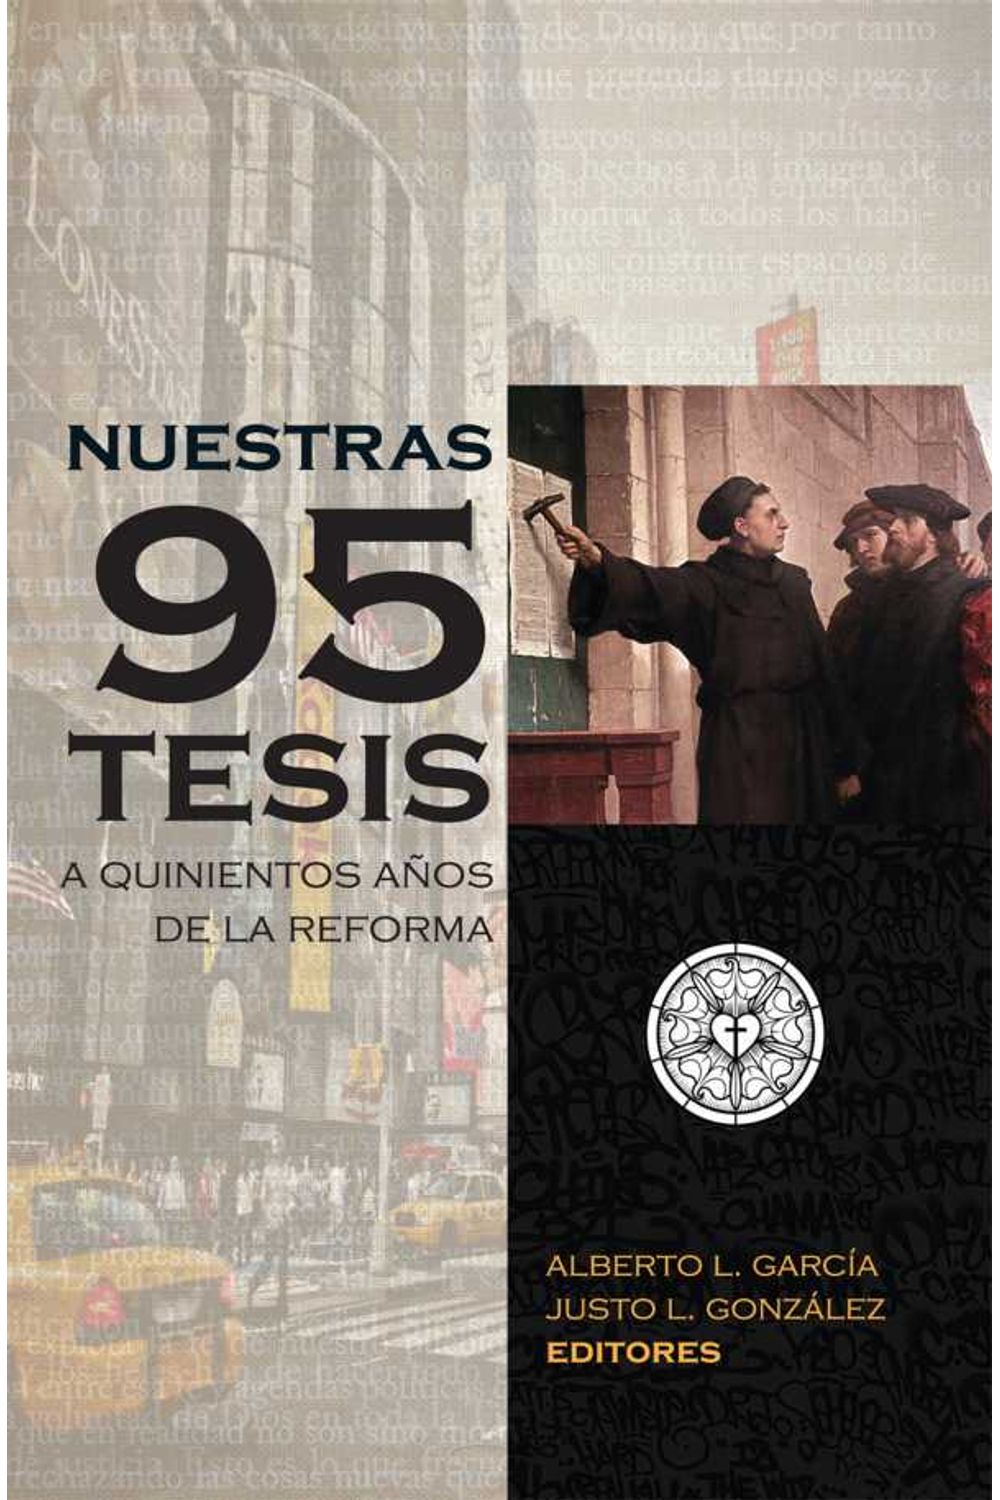 bw-nuestras-95-tesis-a-quinientos-antildeos-de-la-reforma-bestsellers-media-9781945339042